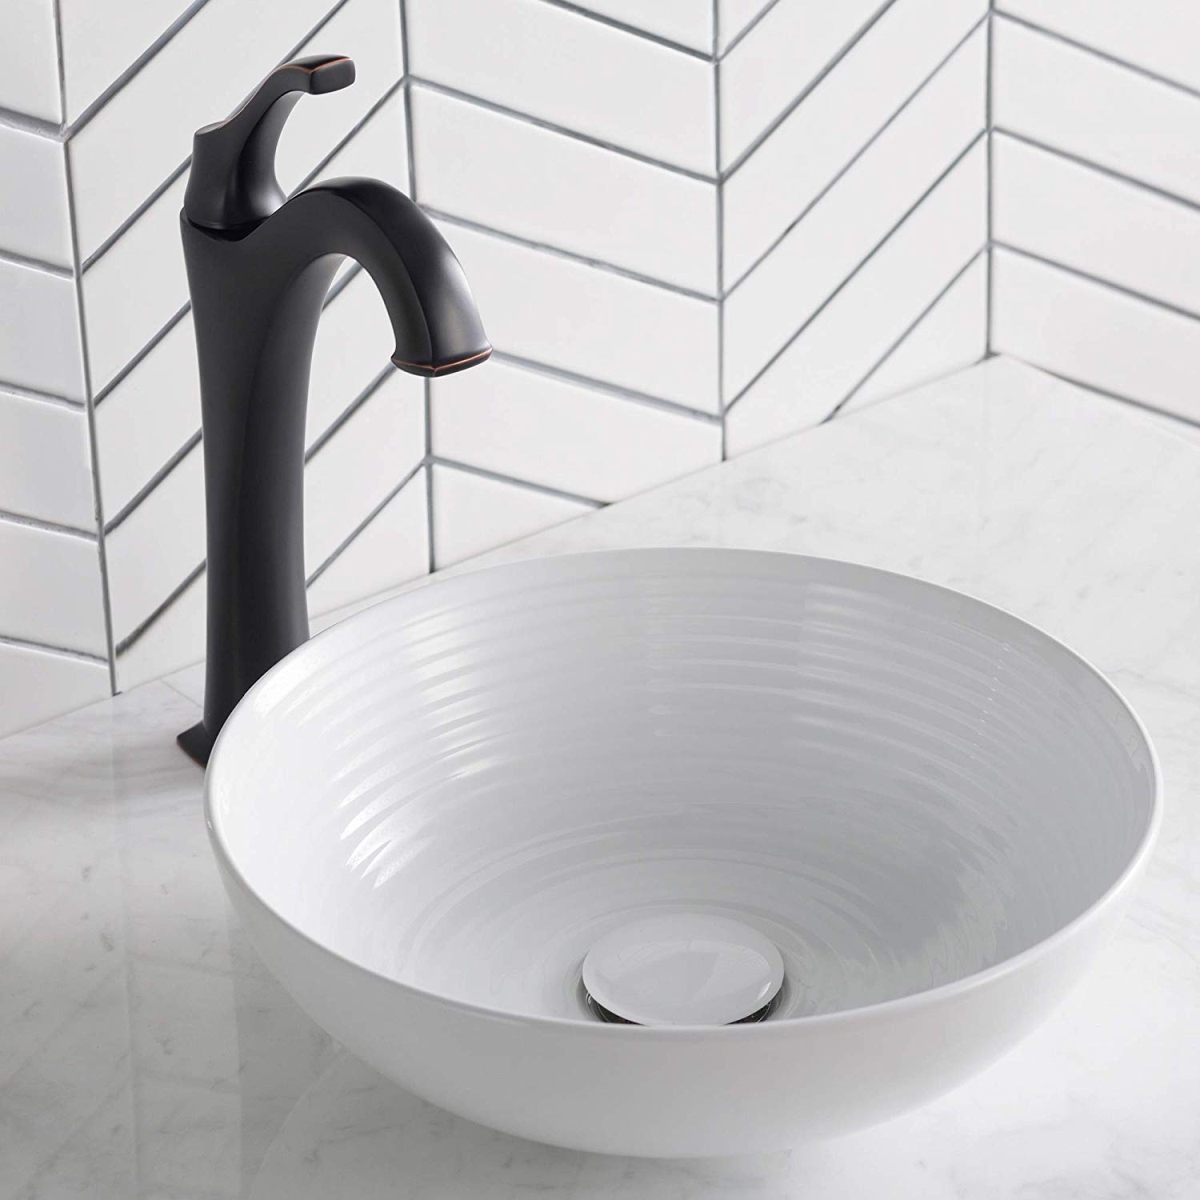 Kraus Kcv-204gwh 13 X 4.37 In. Round Porcelain Ceramic Vessel Bathroom Sink, White